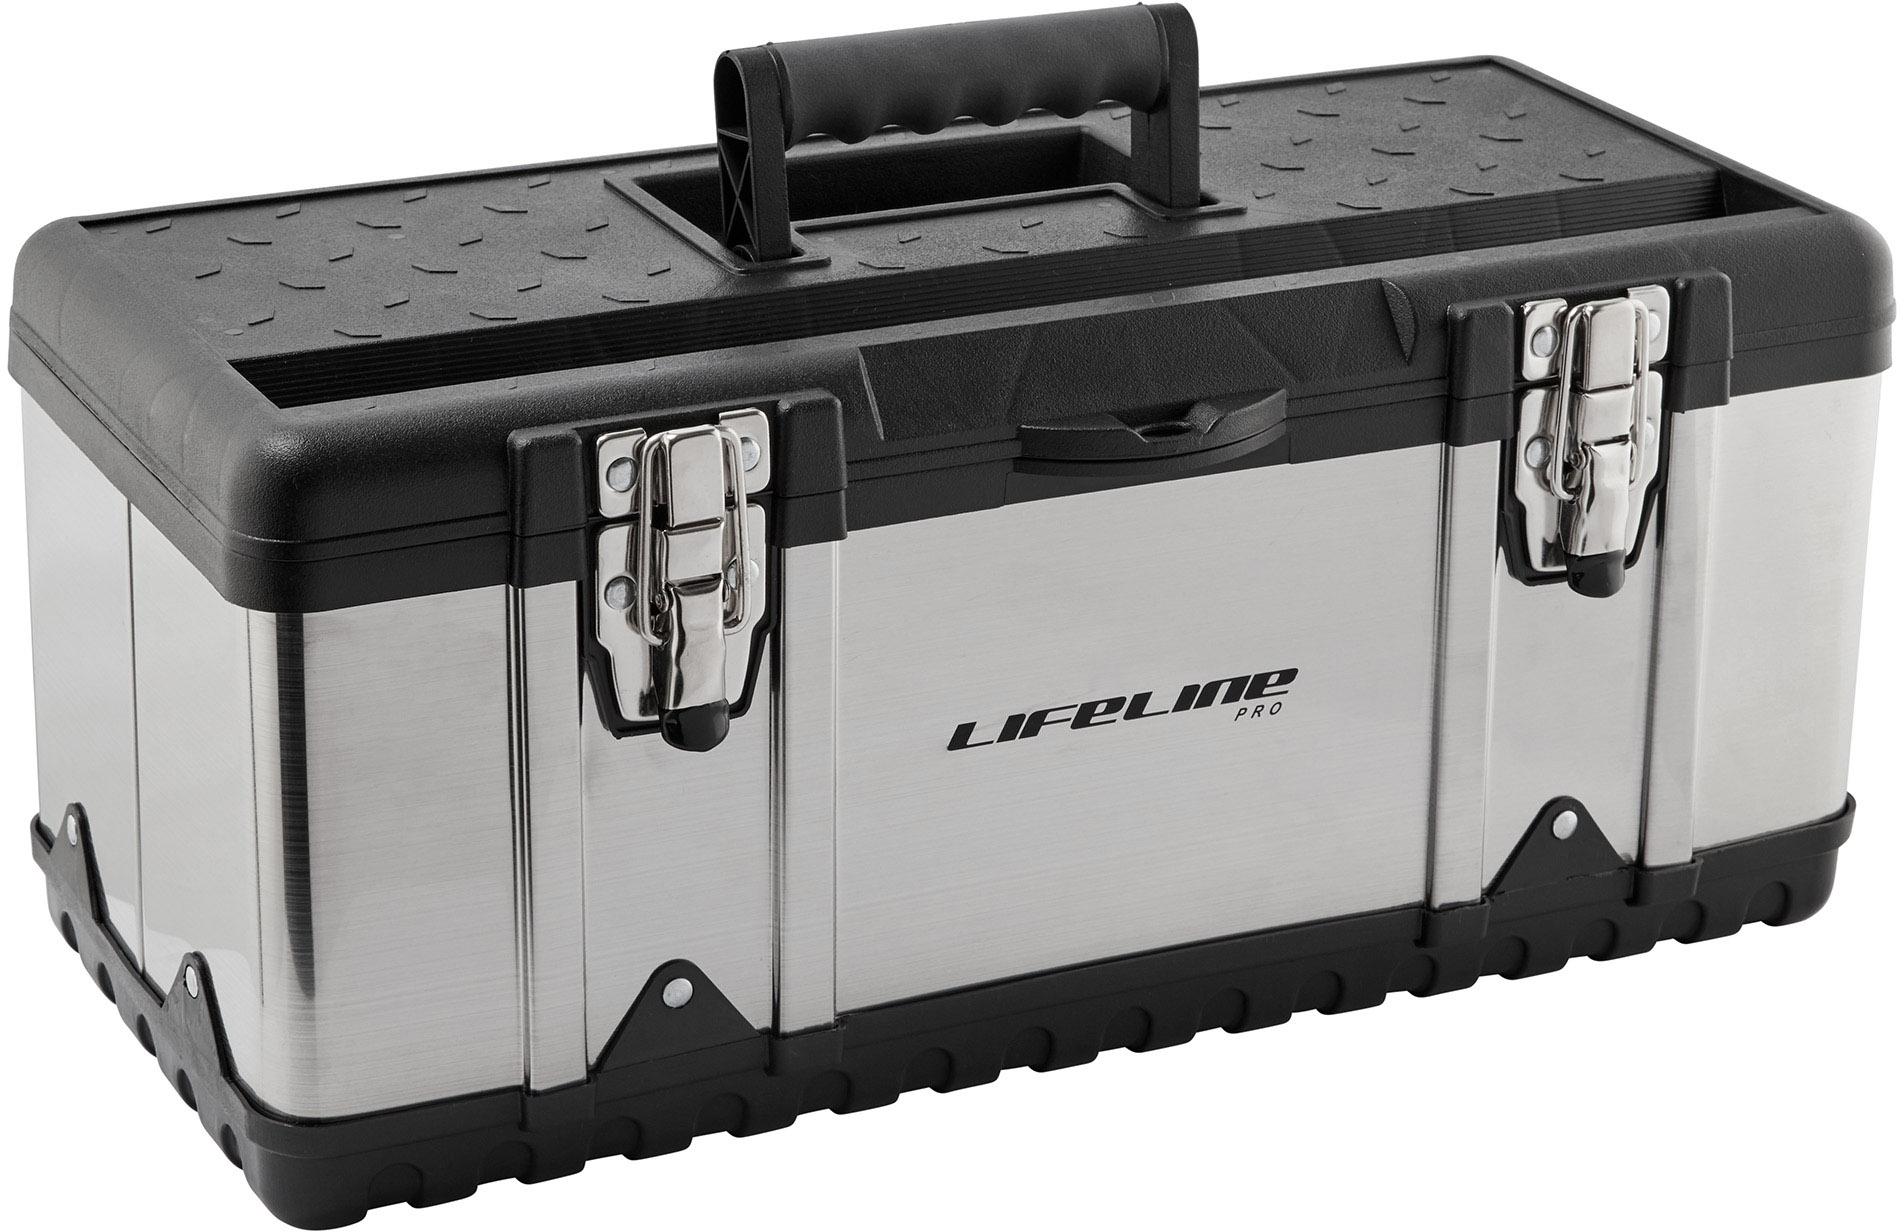 Lifeline Pro Stainless Steel Hard Case